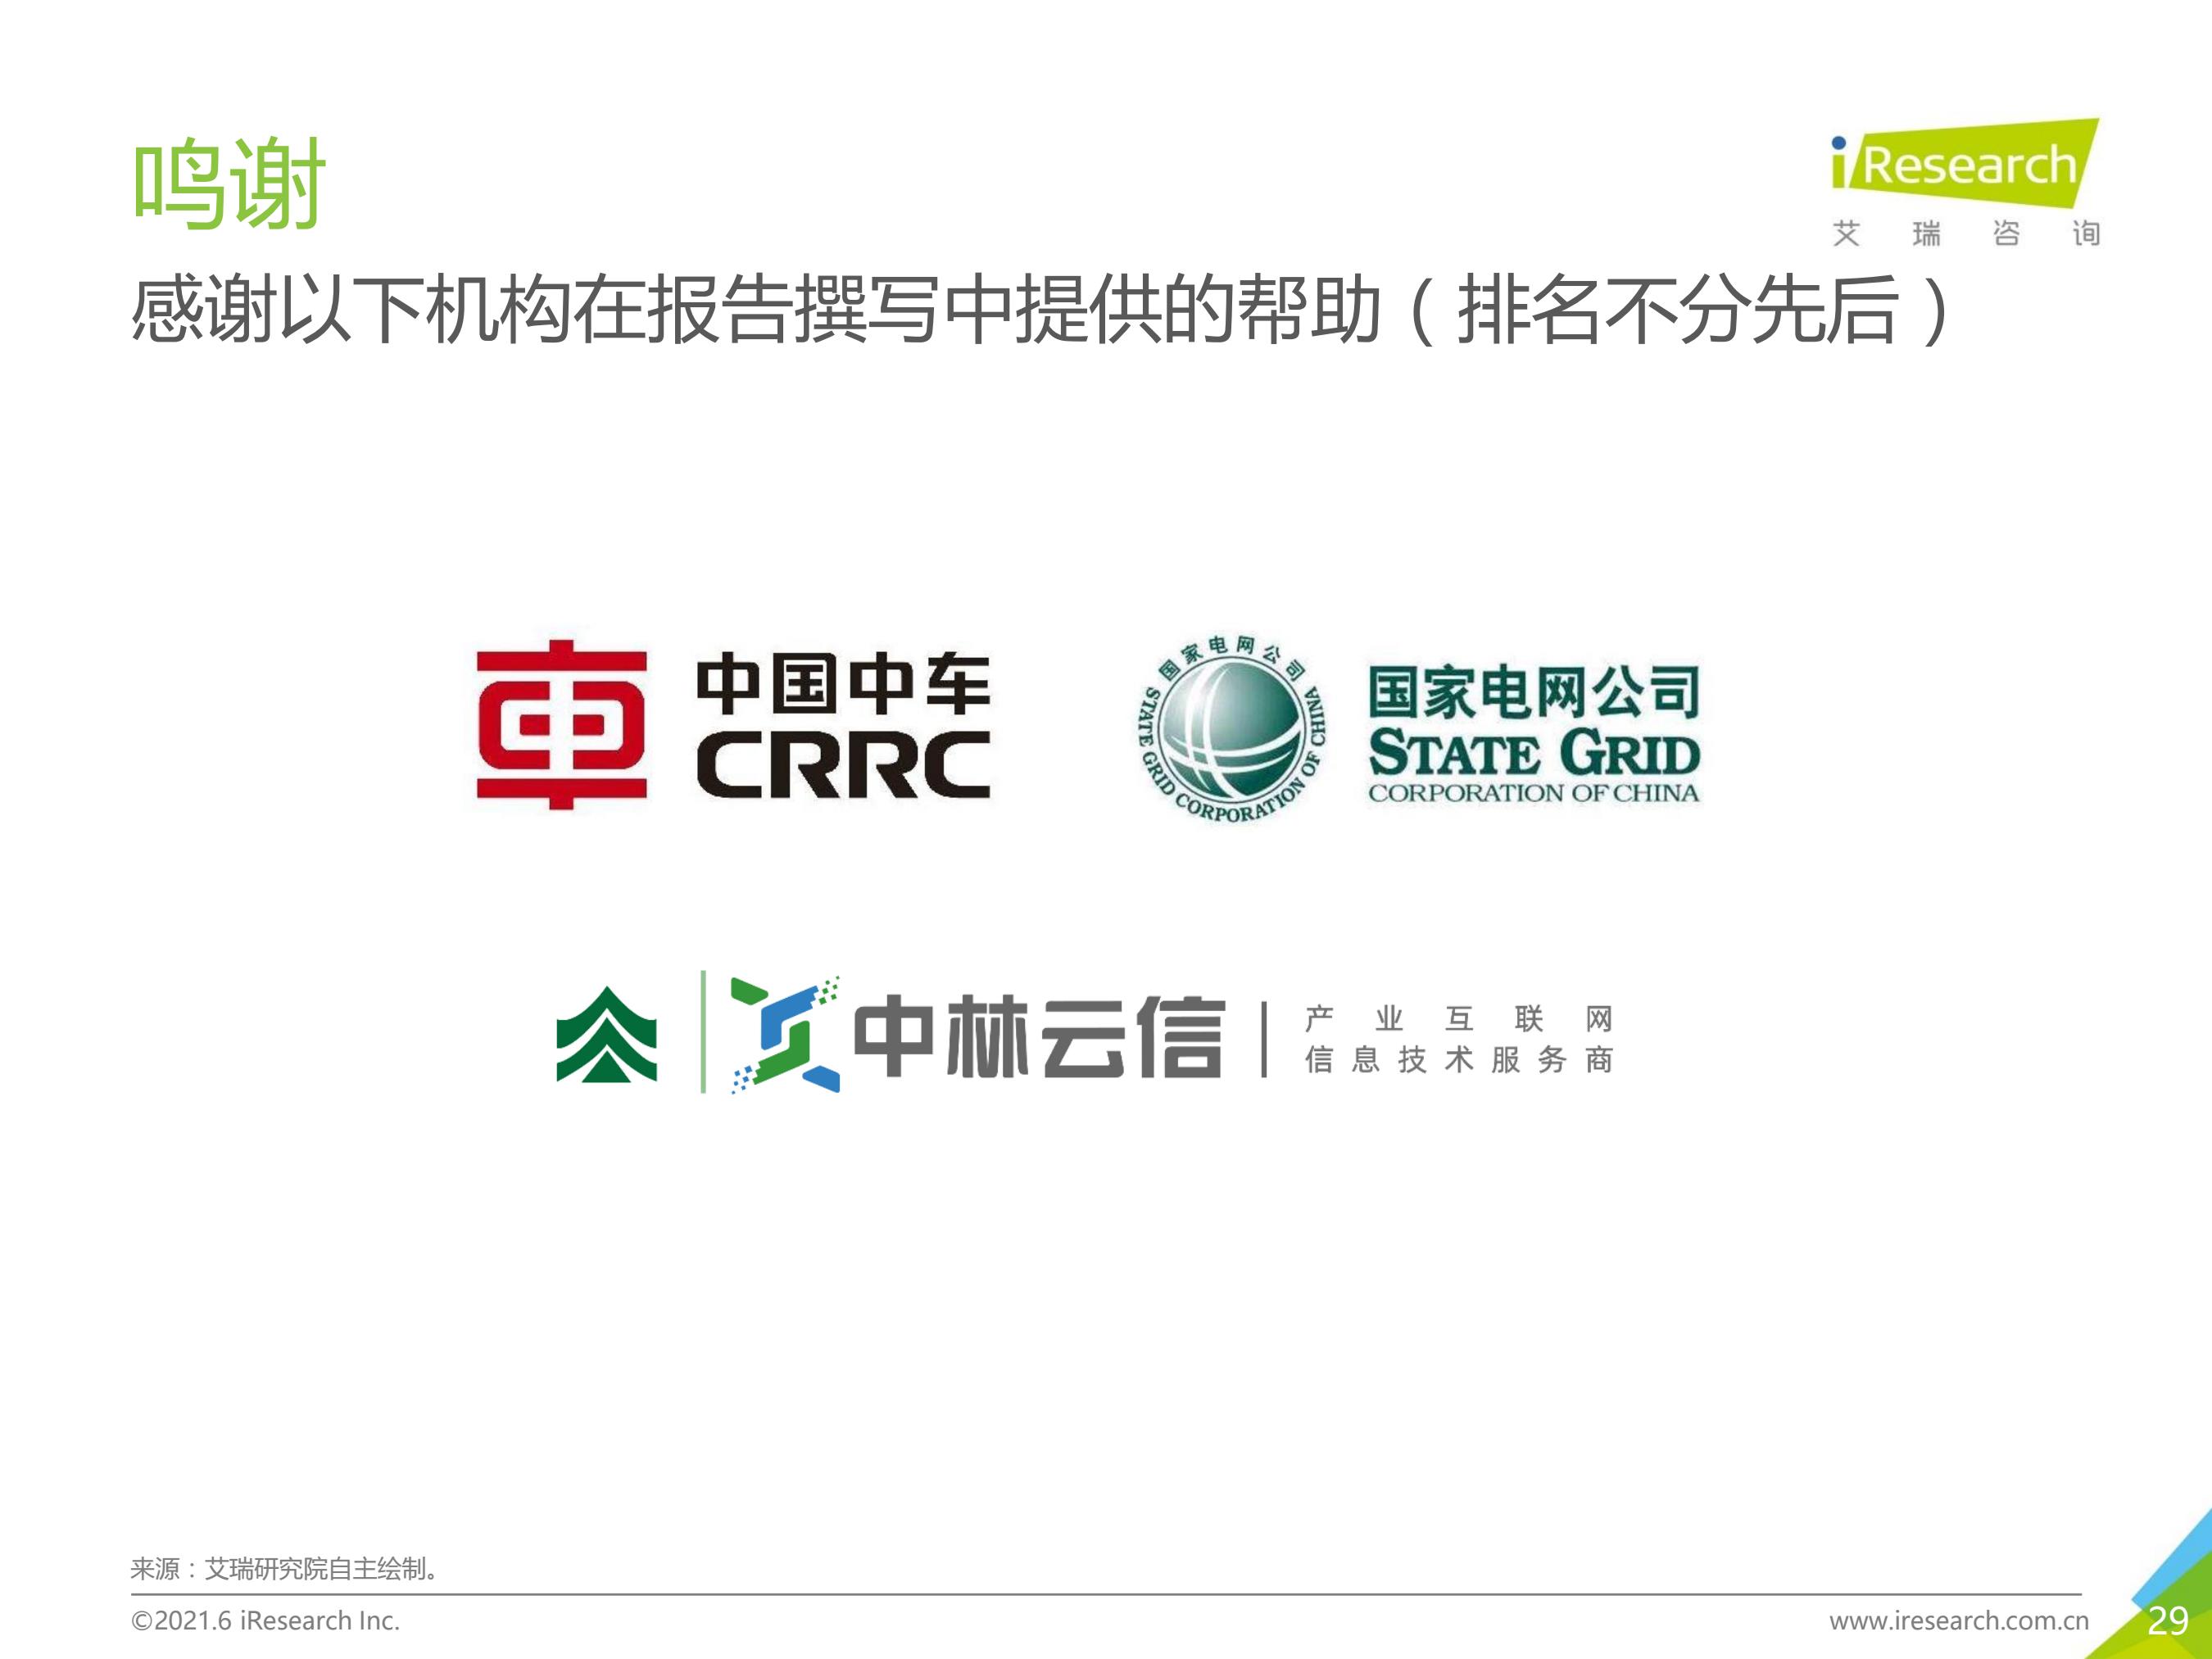 古太古代—2021年中国碳中和行业研究报告